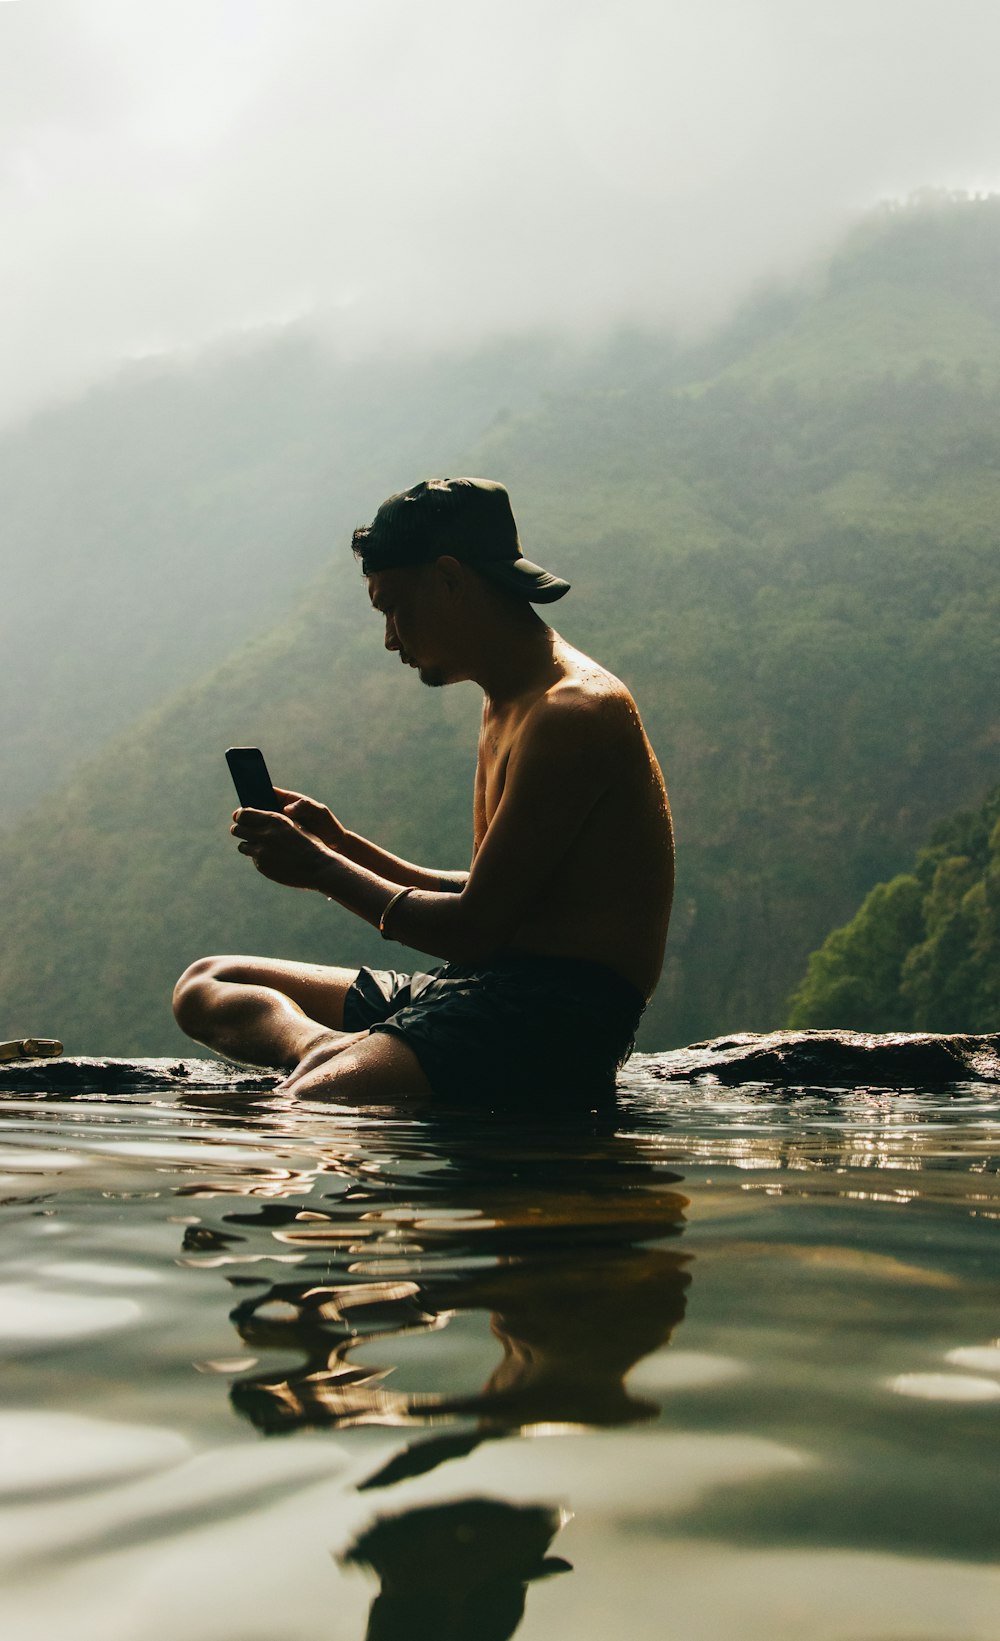 물 속에 앉아 핸드폰을 보고 있는 남자